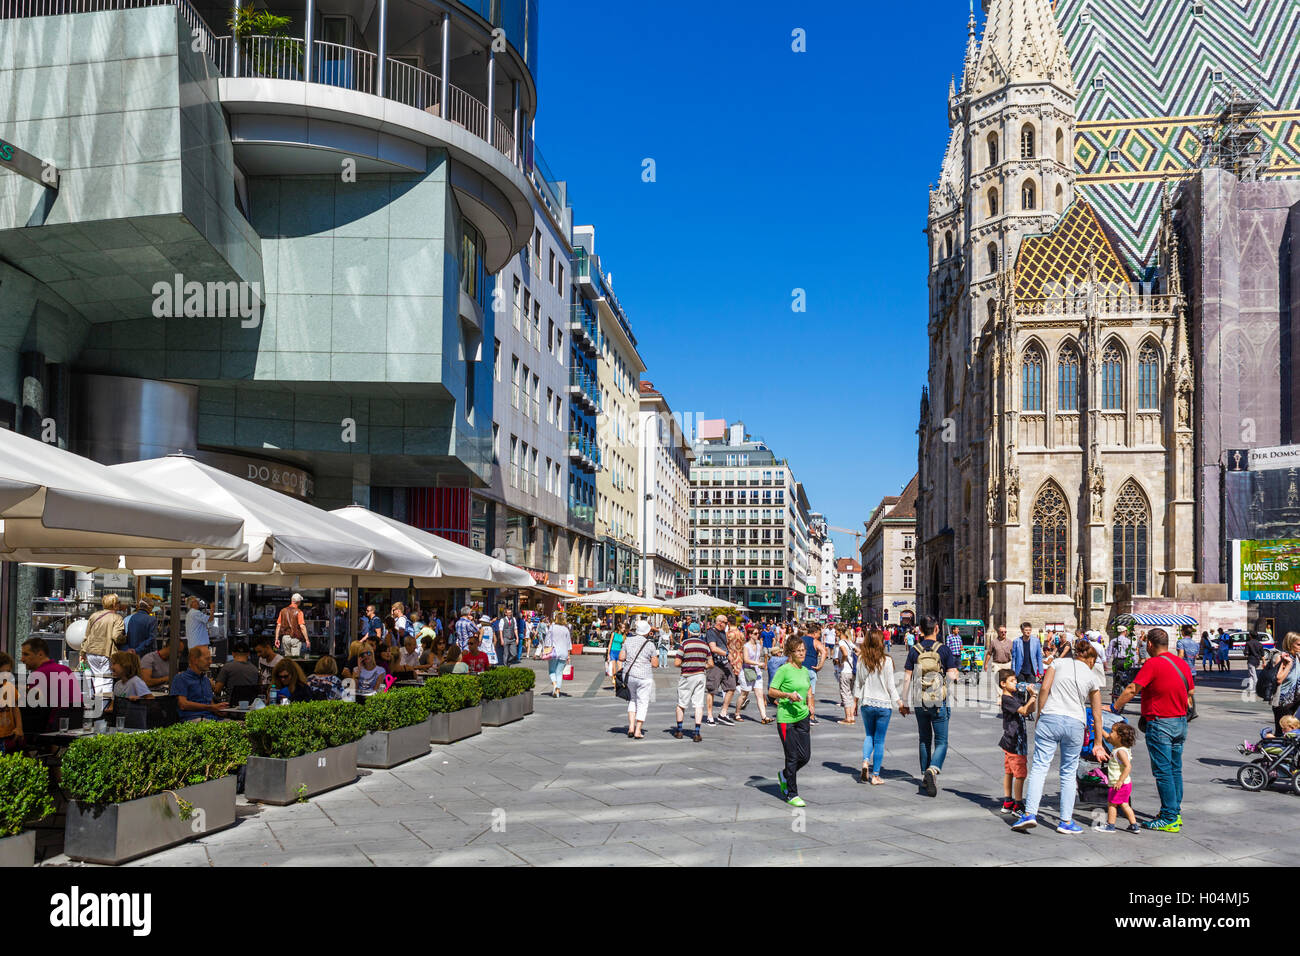 Stephansplatz avec Stephansdom (cathédrale St Stephen's) vienne à droite, Innere Stadt, Vienne, Autriche Banque D'Images